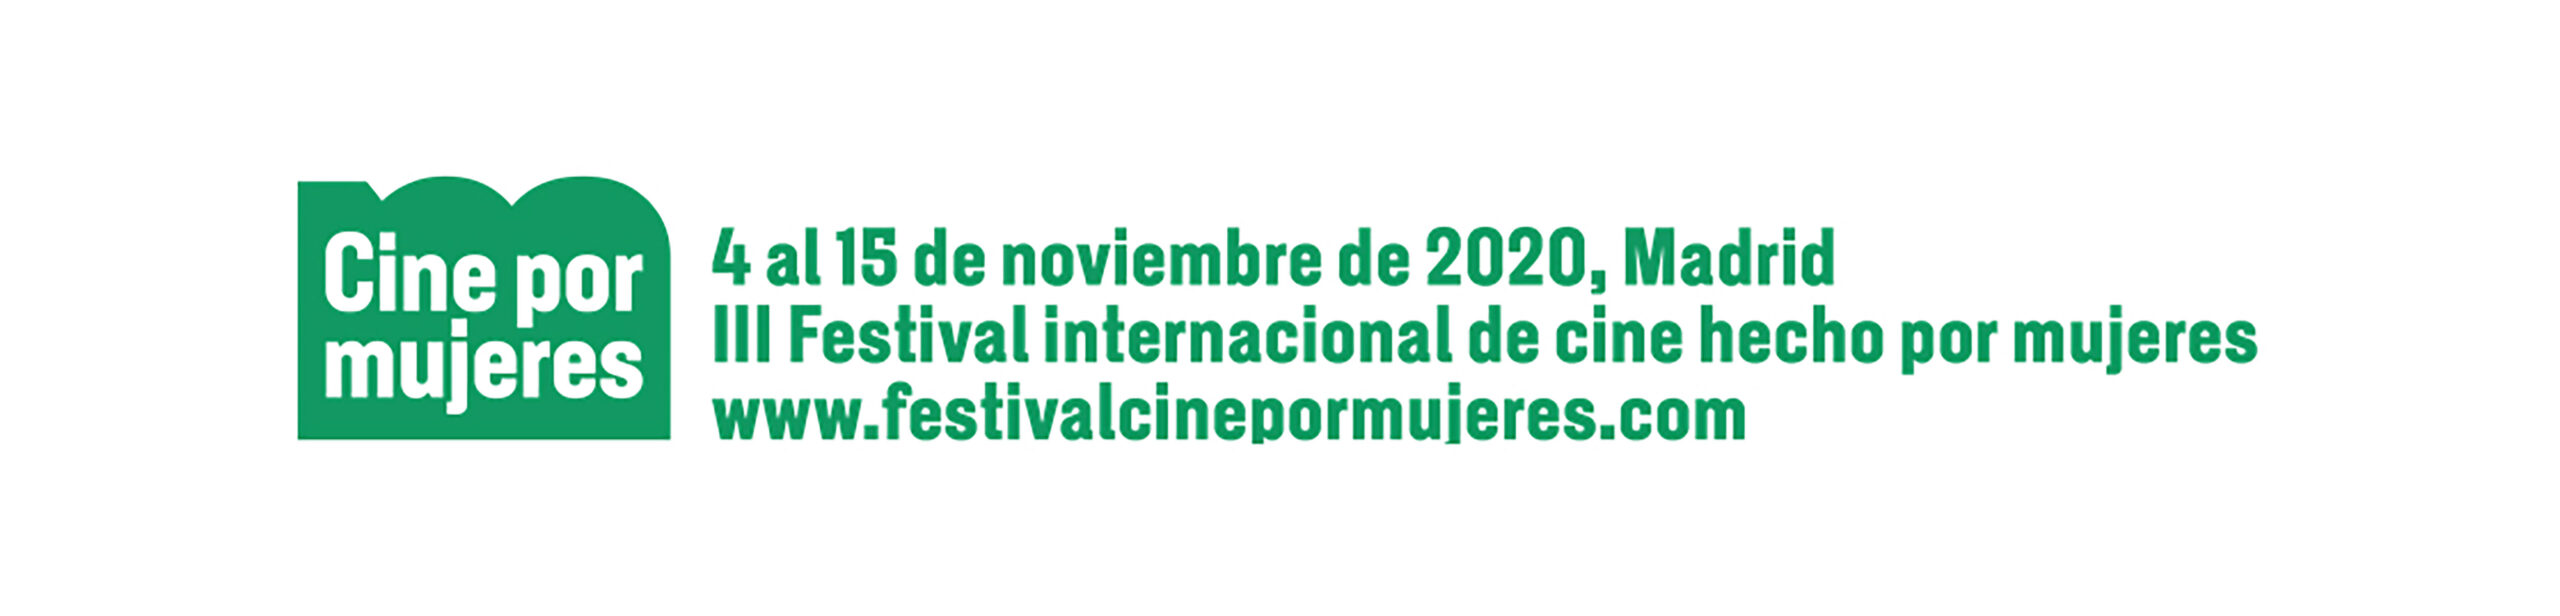 Del 4 al 15 de noviembre de 2020 vuelve el Festival Cine por Mujeres